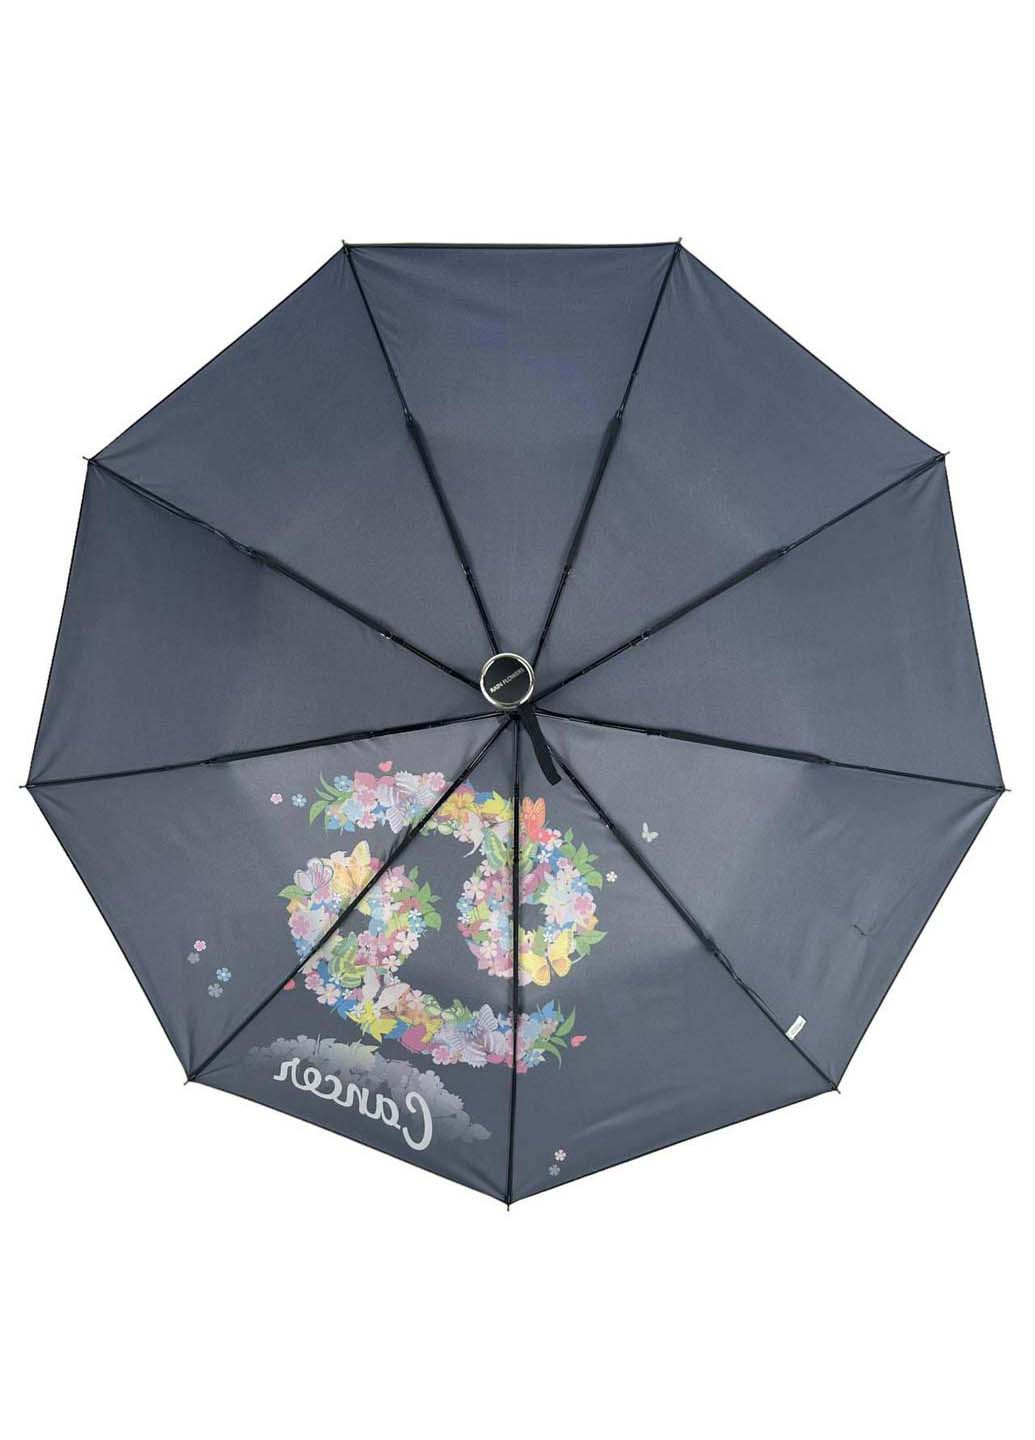 Женский зонт-автомат "Зодиак" в подарочной упаковке с платком Rain (265992225)